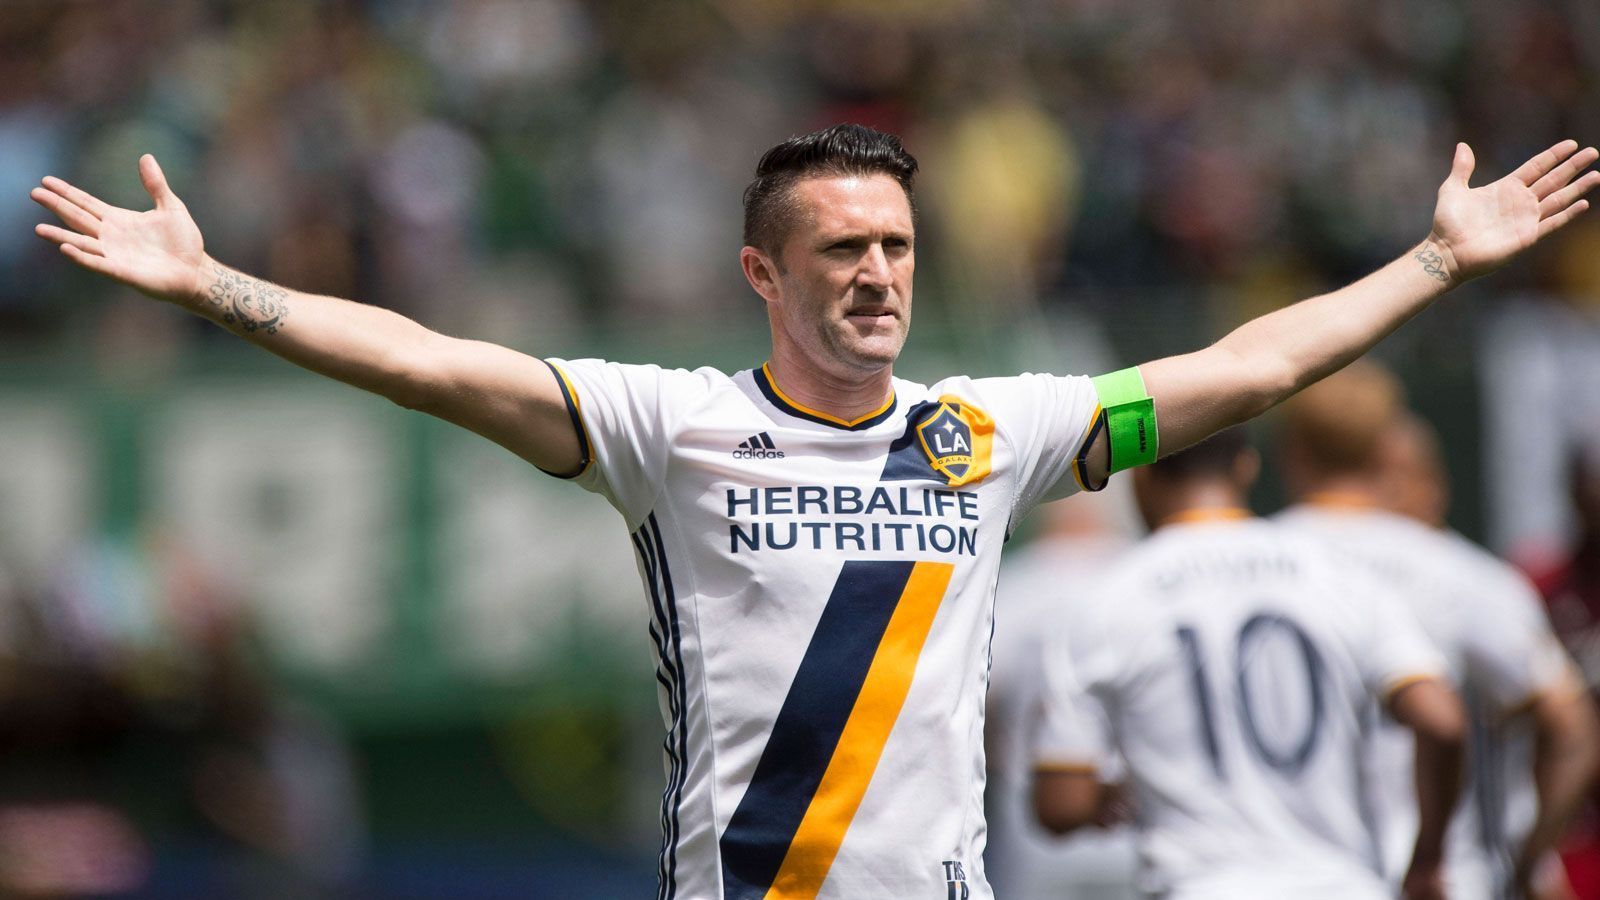 
                <strong>Robbie Keane</strong><br>
                &#x2022; In der MLS aktiv: 2011, 2012 bis 2016<br>&#x2022; Verein: Los Angeles Galaxy<br>&#x2022; Absolvierte Partien: 165 (104 Tore)<br>
              